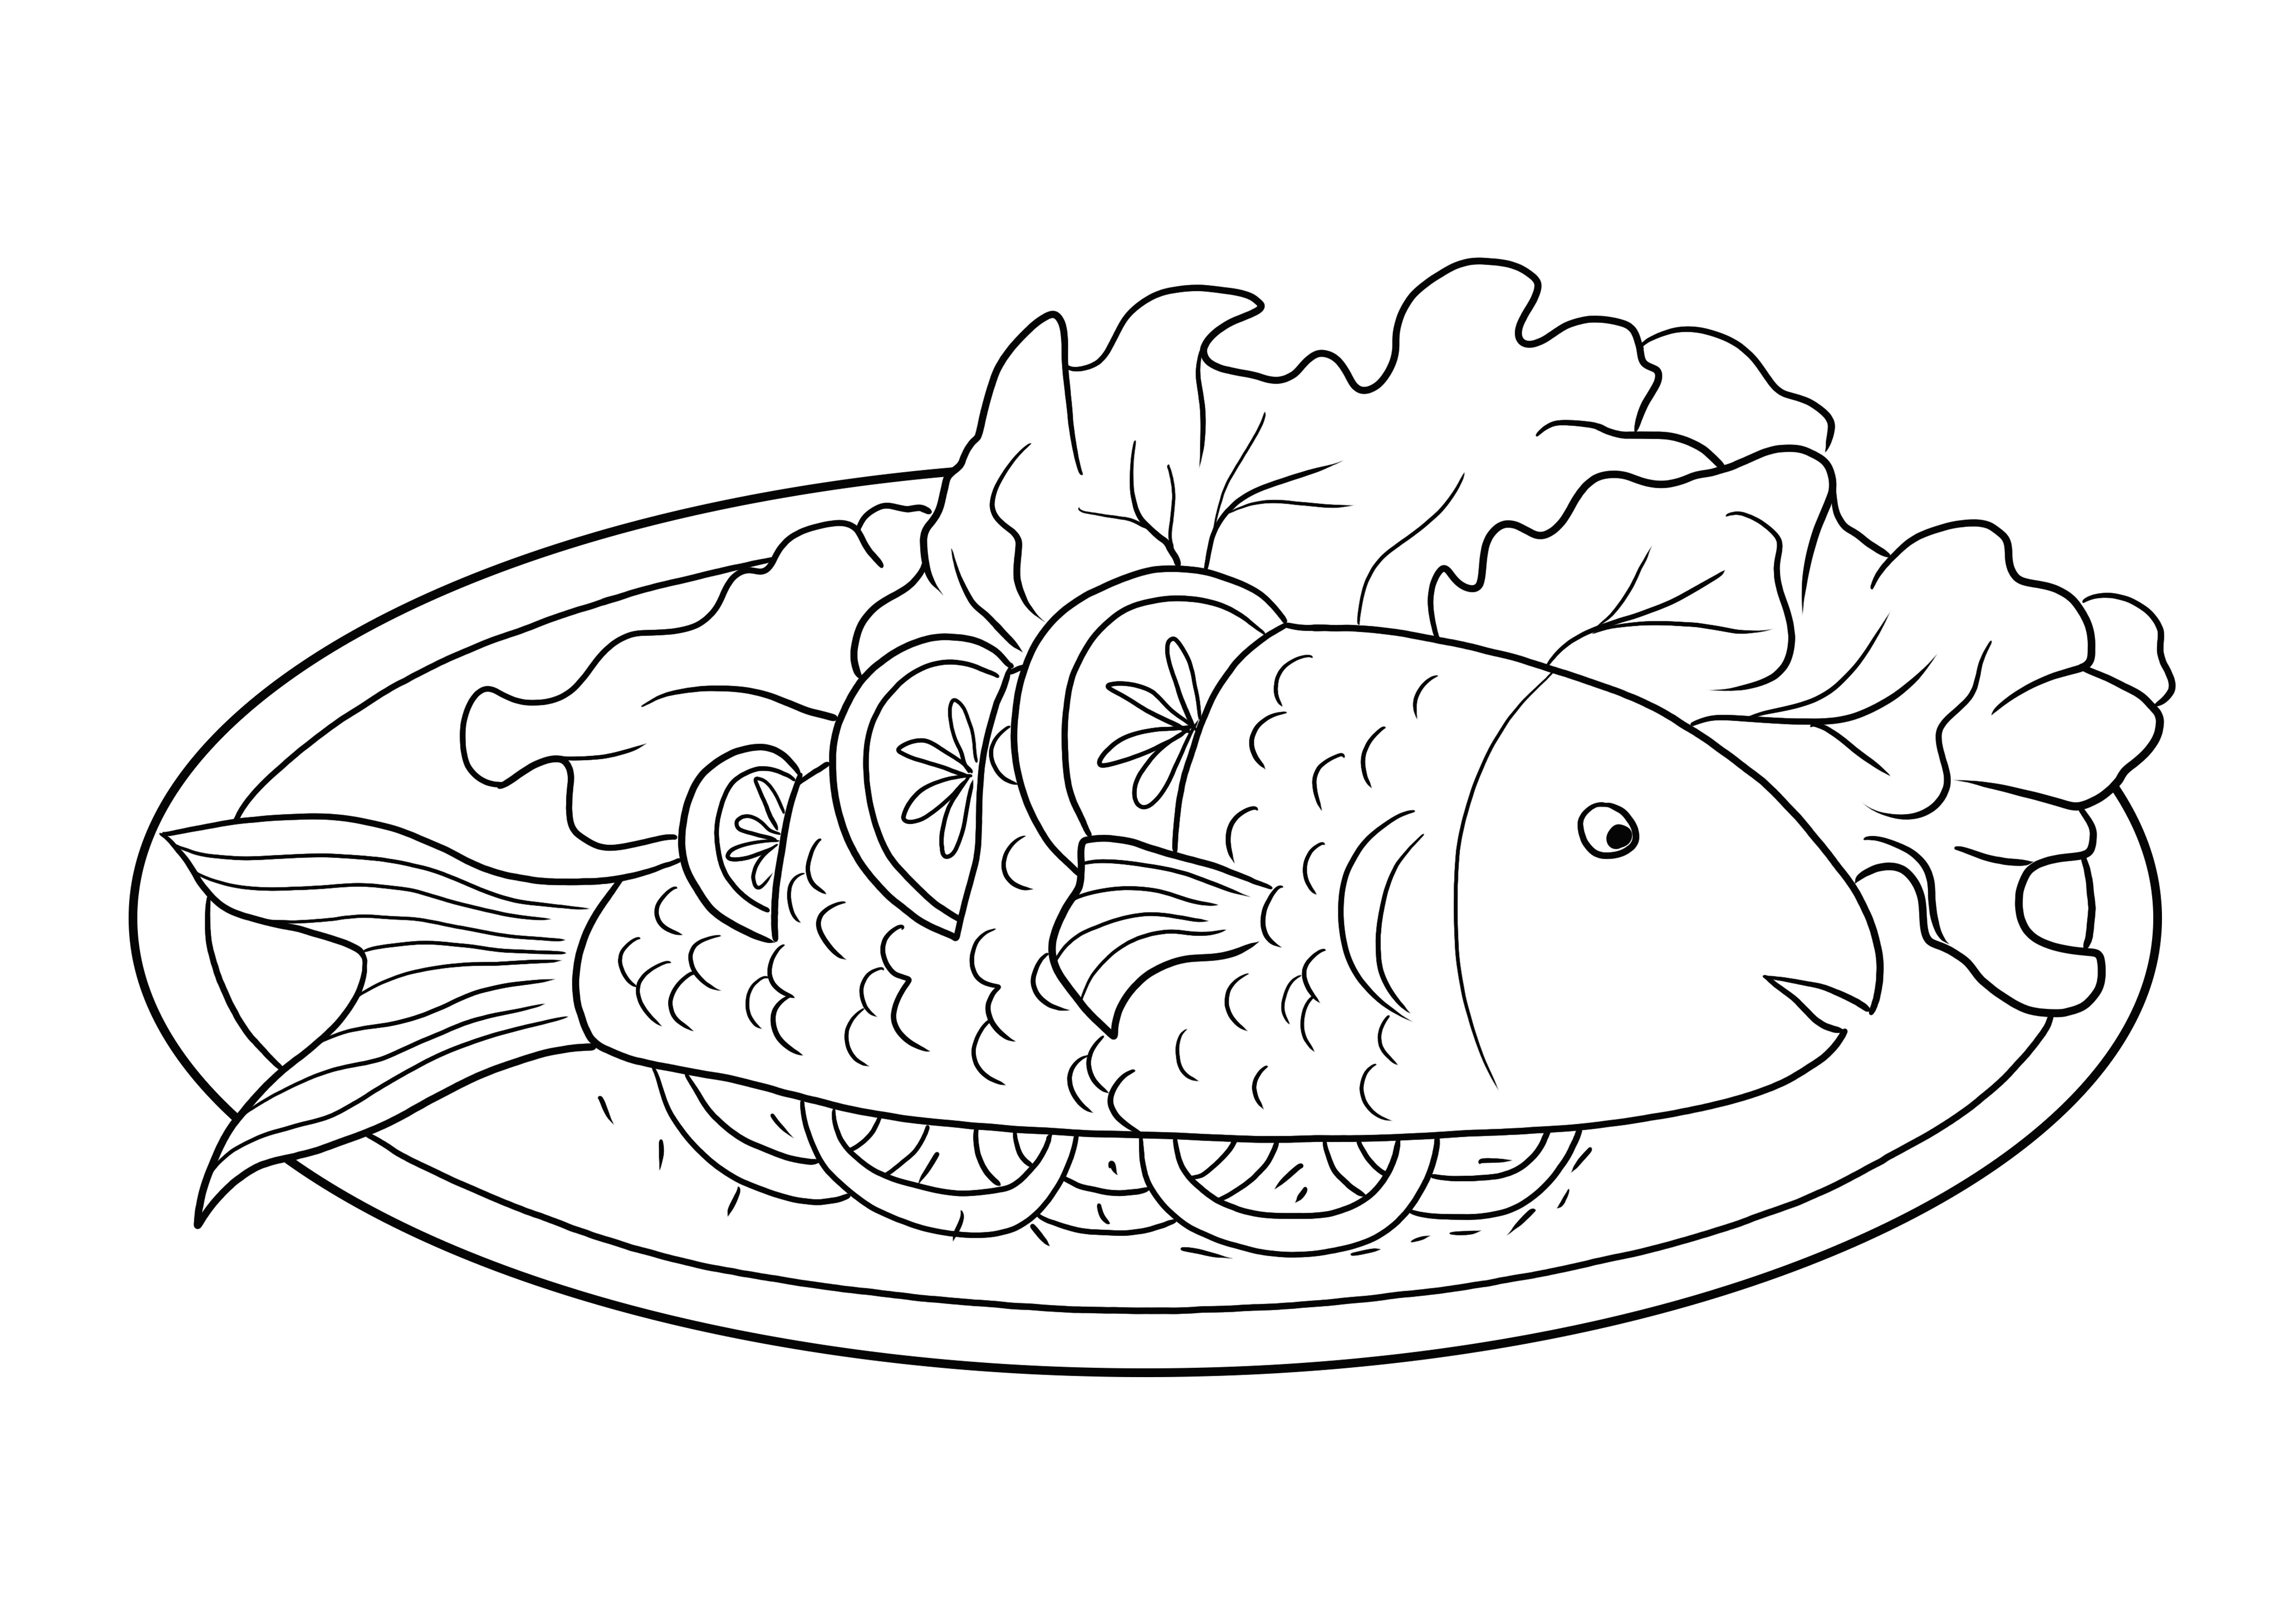 Gotowana ryba z cytryną — łatwe kolorowanki dla dzieci do nauki kolorowania przez zabawę